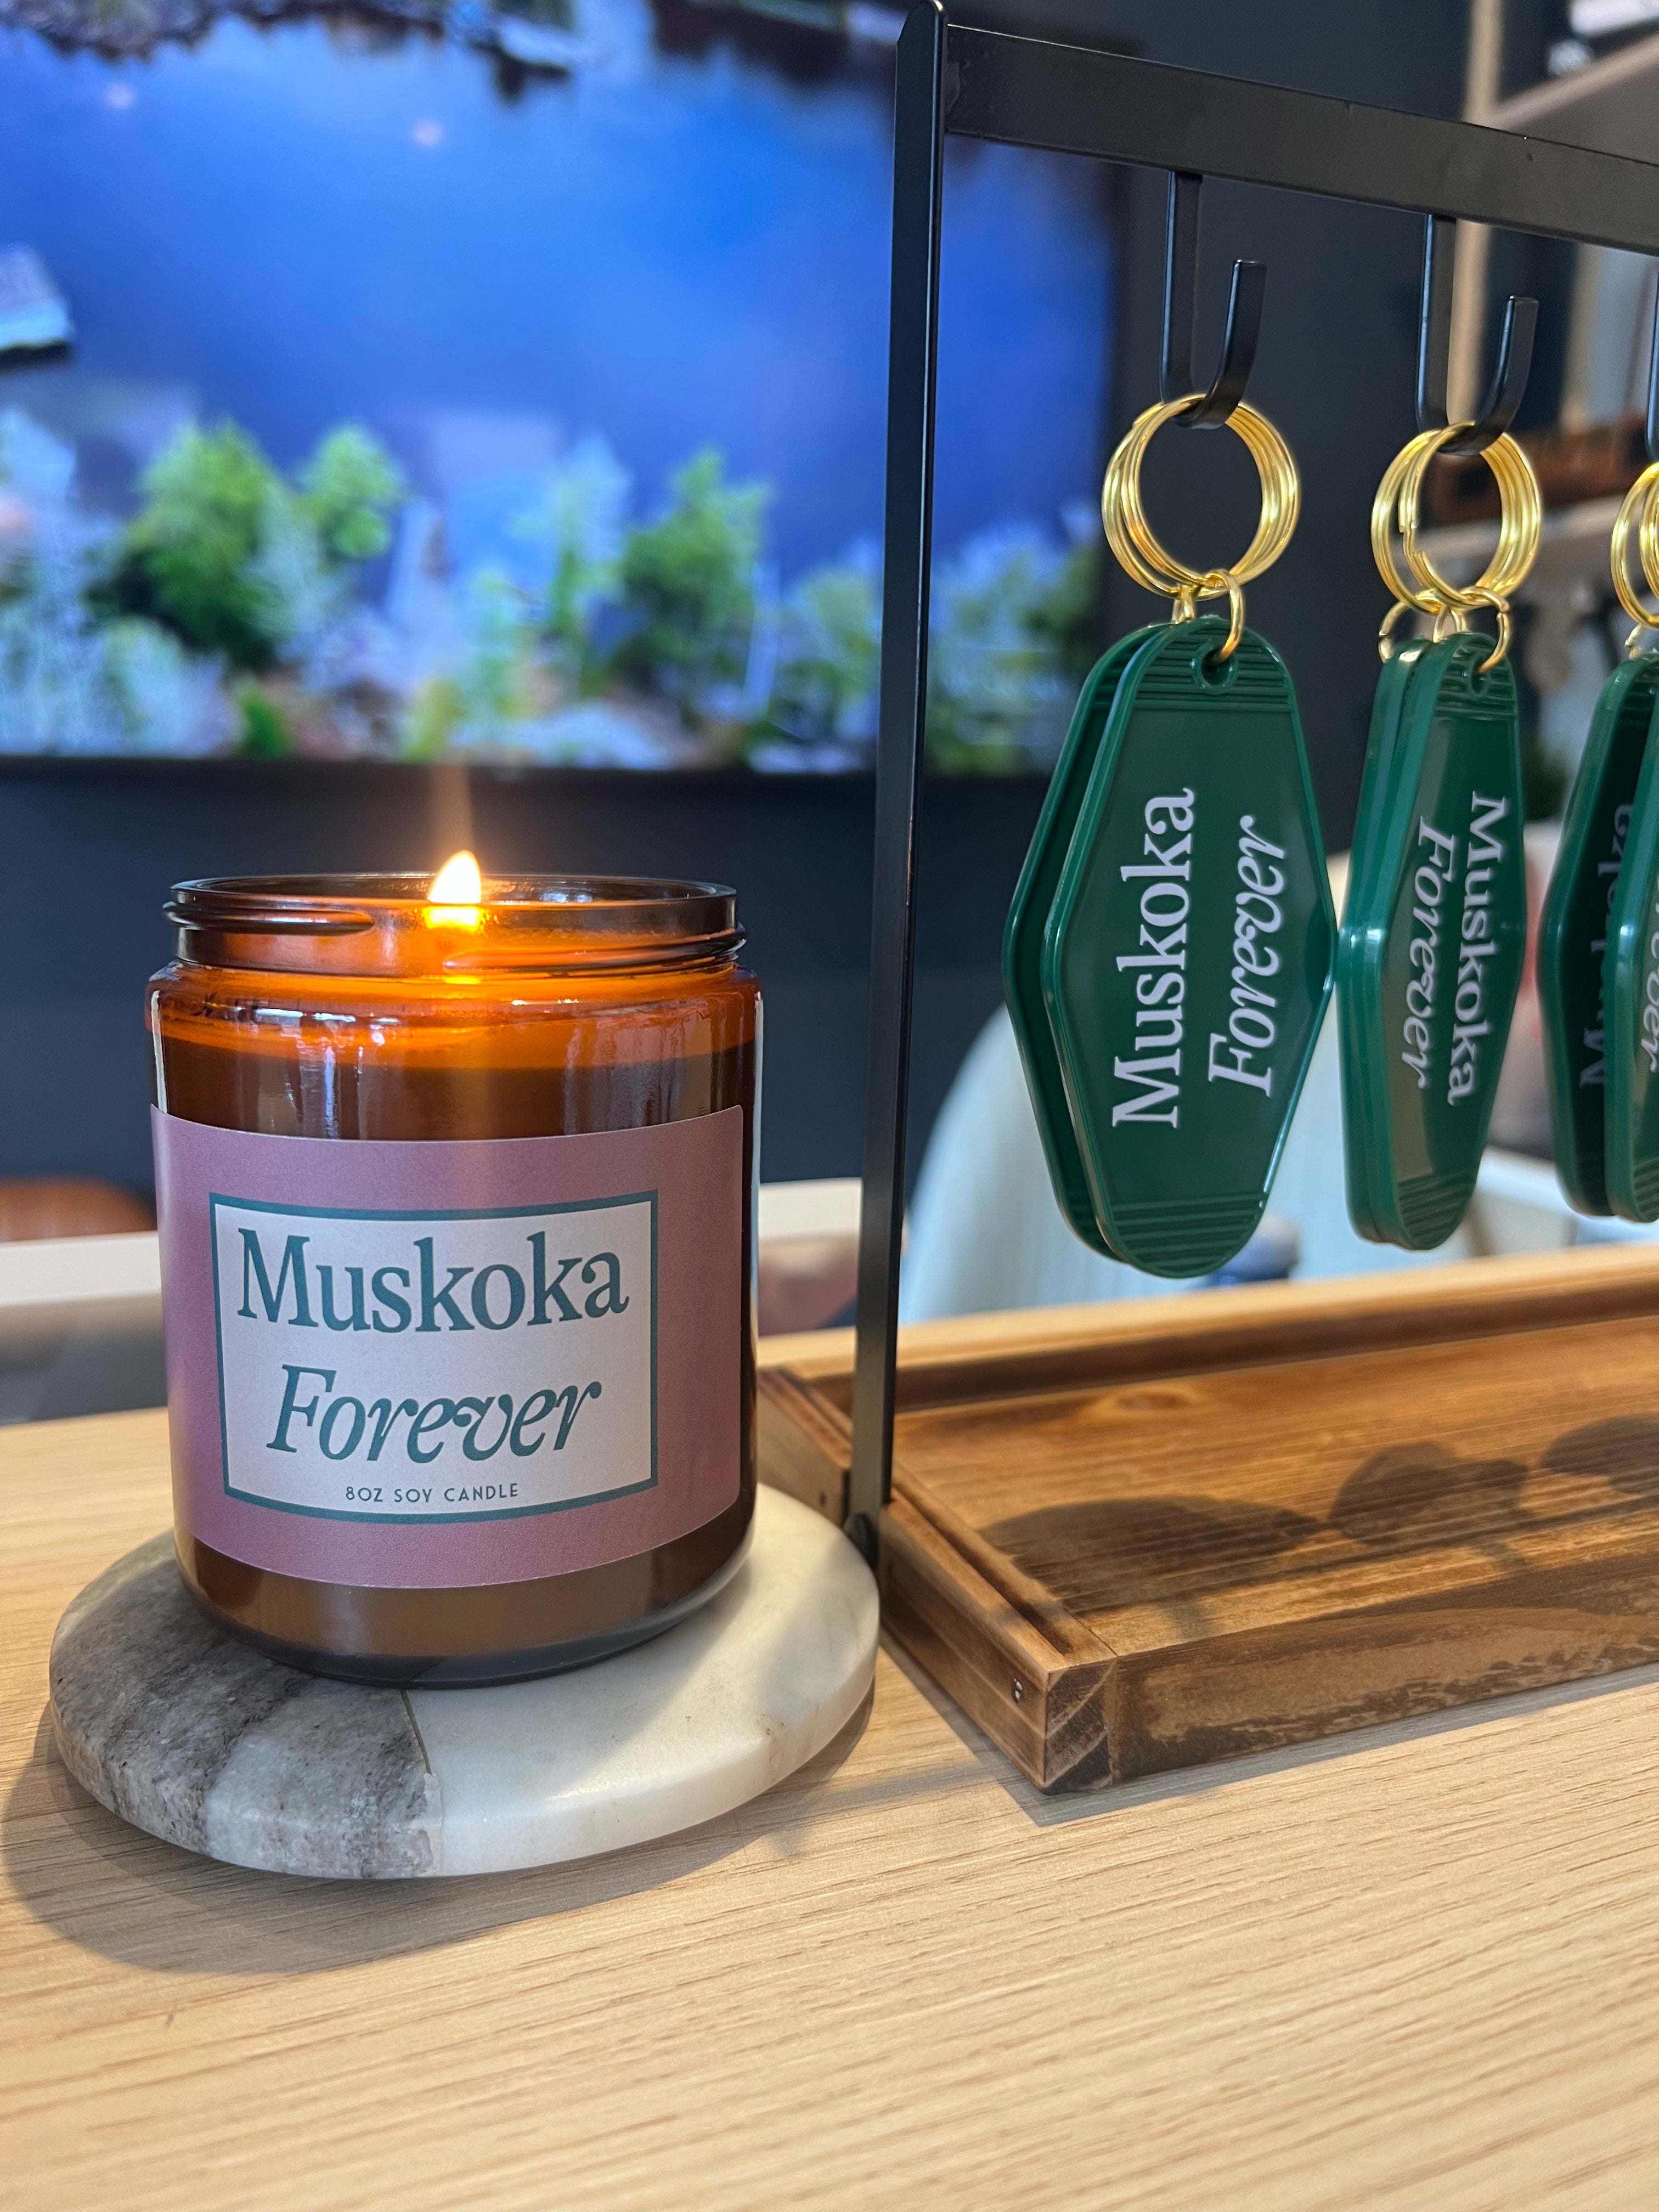 Muskoka Forever Candle